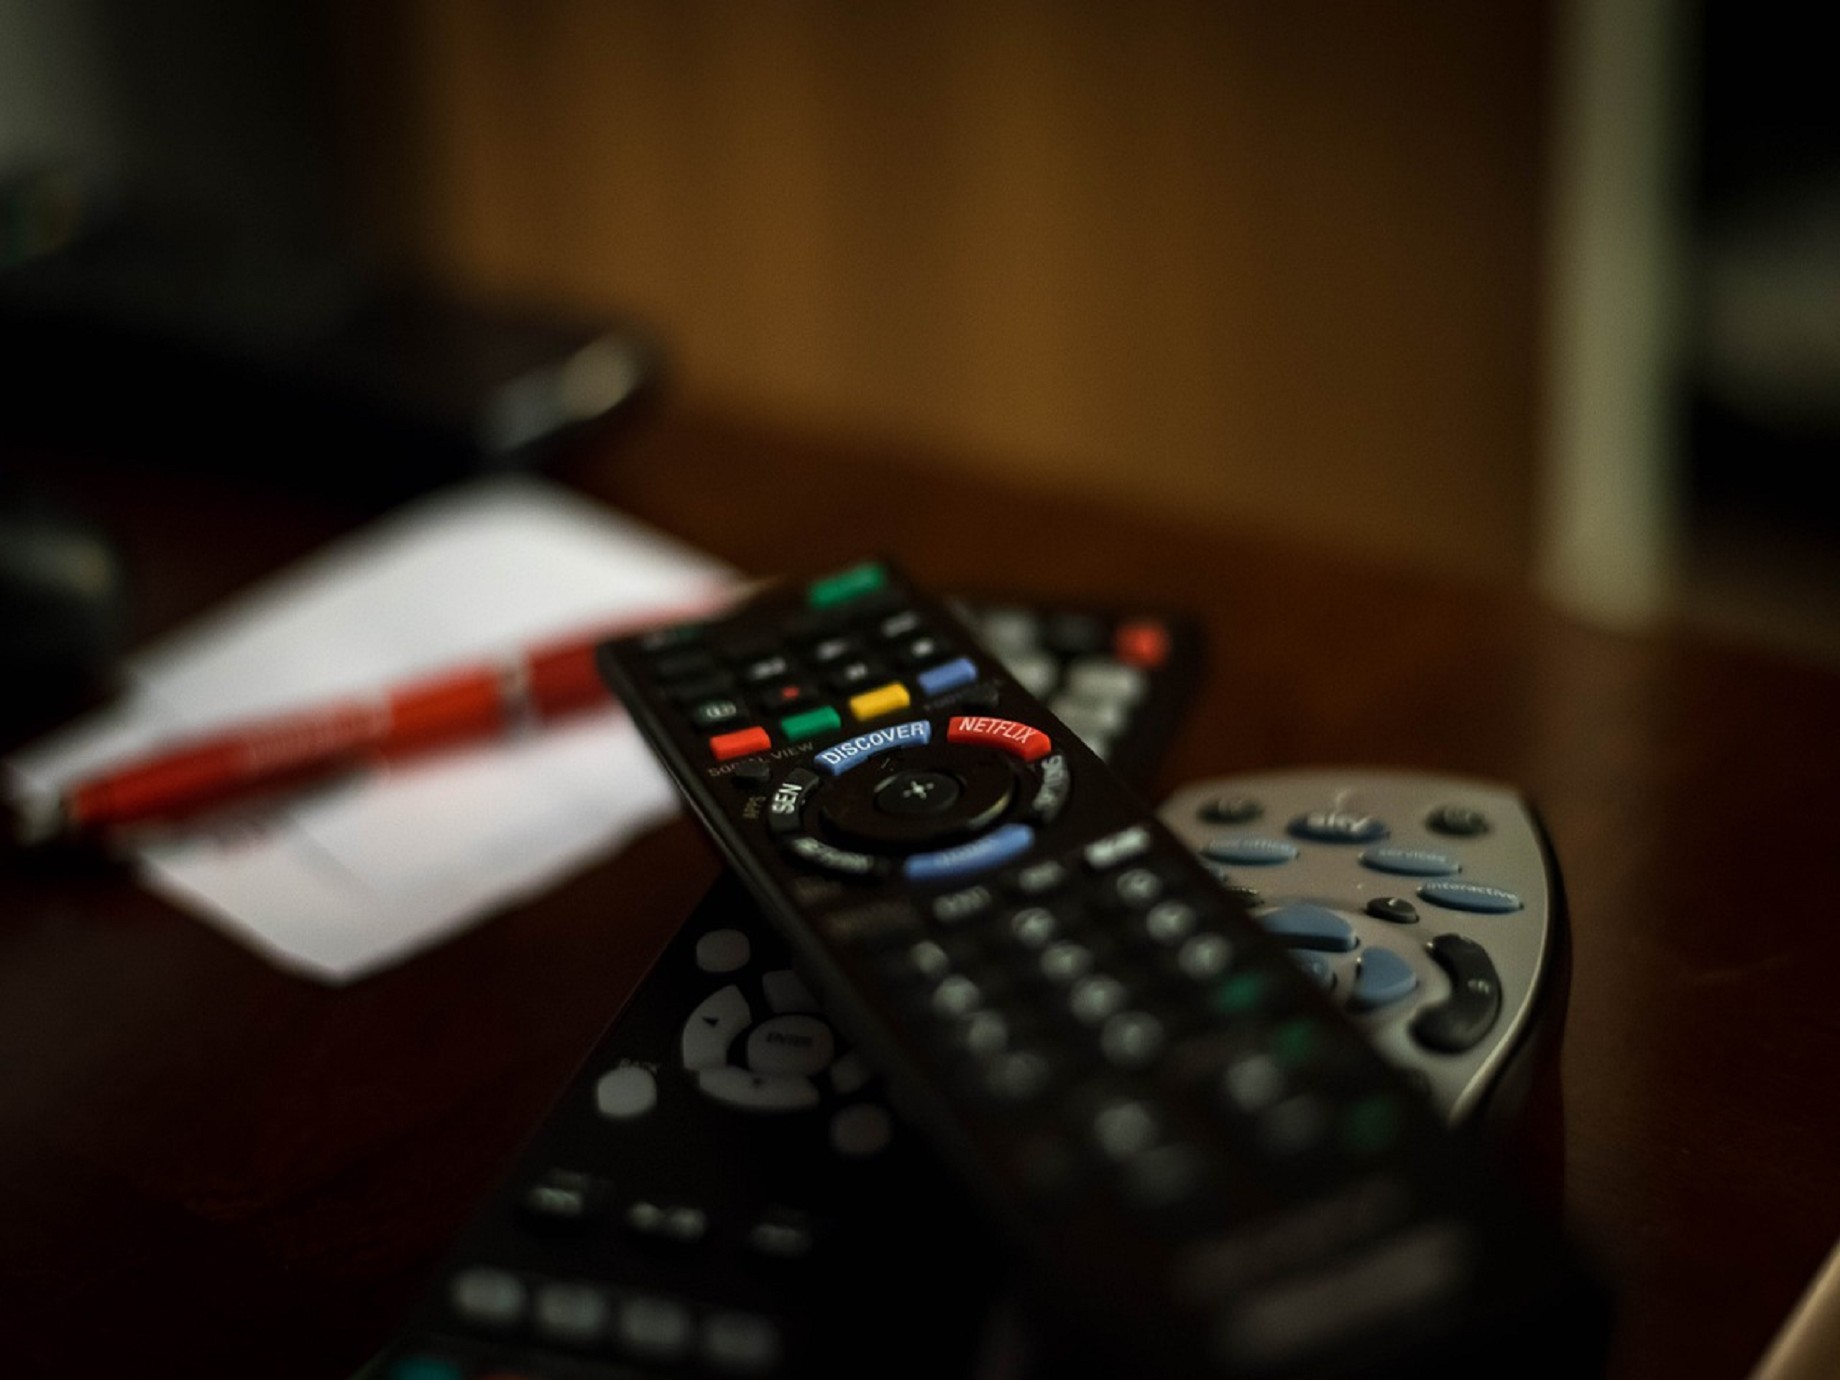 2015電視與媒體消費趨勢報告:行動裝置看電視、原創內容正夯